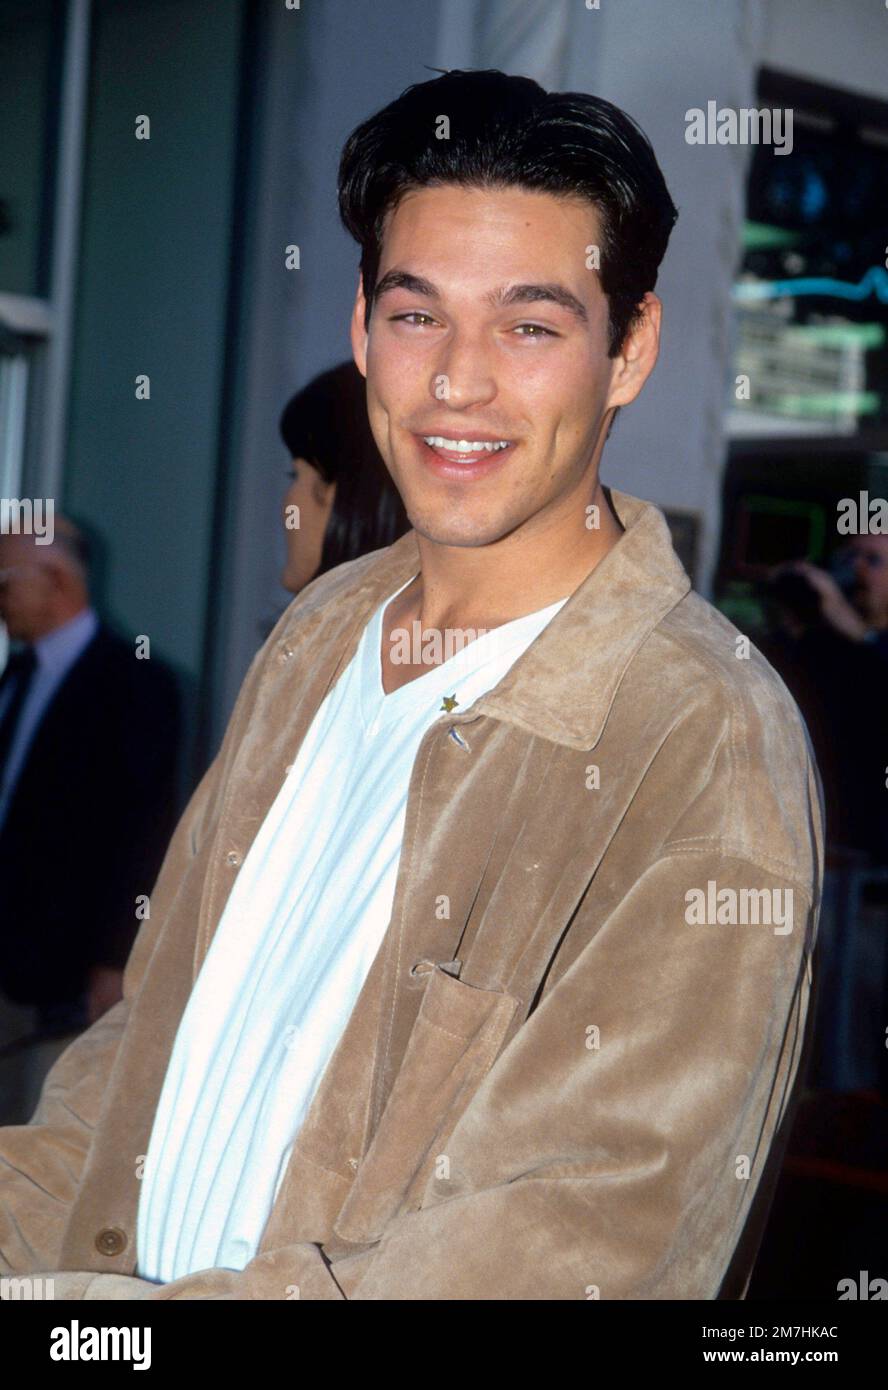 Eddie Cibrian attending a movie premiere in 1996 Credit: Ron Wolfson  / MediaPunch Stock Photo